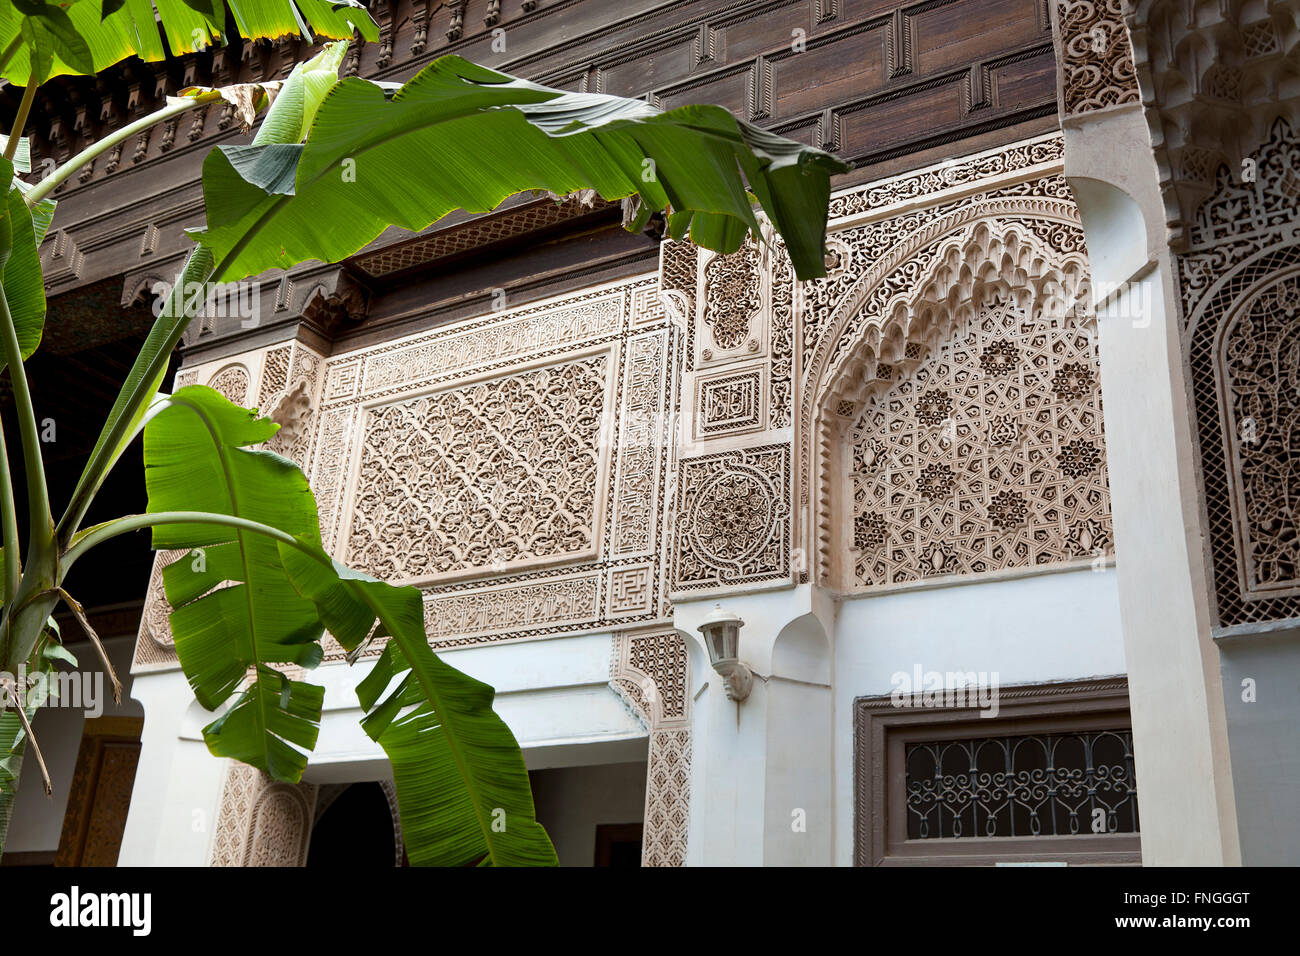 Plâtres incroyable sur les murs de palais de la Bahia, Marrakech, Maroc Banque D'Images